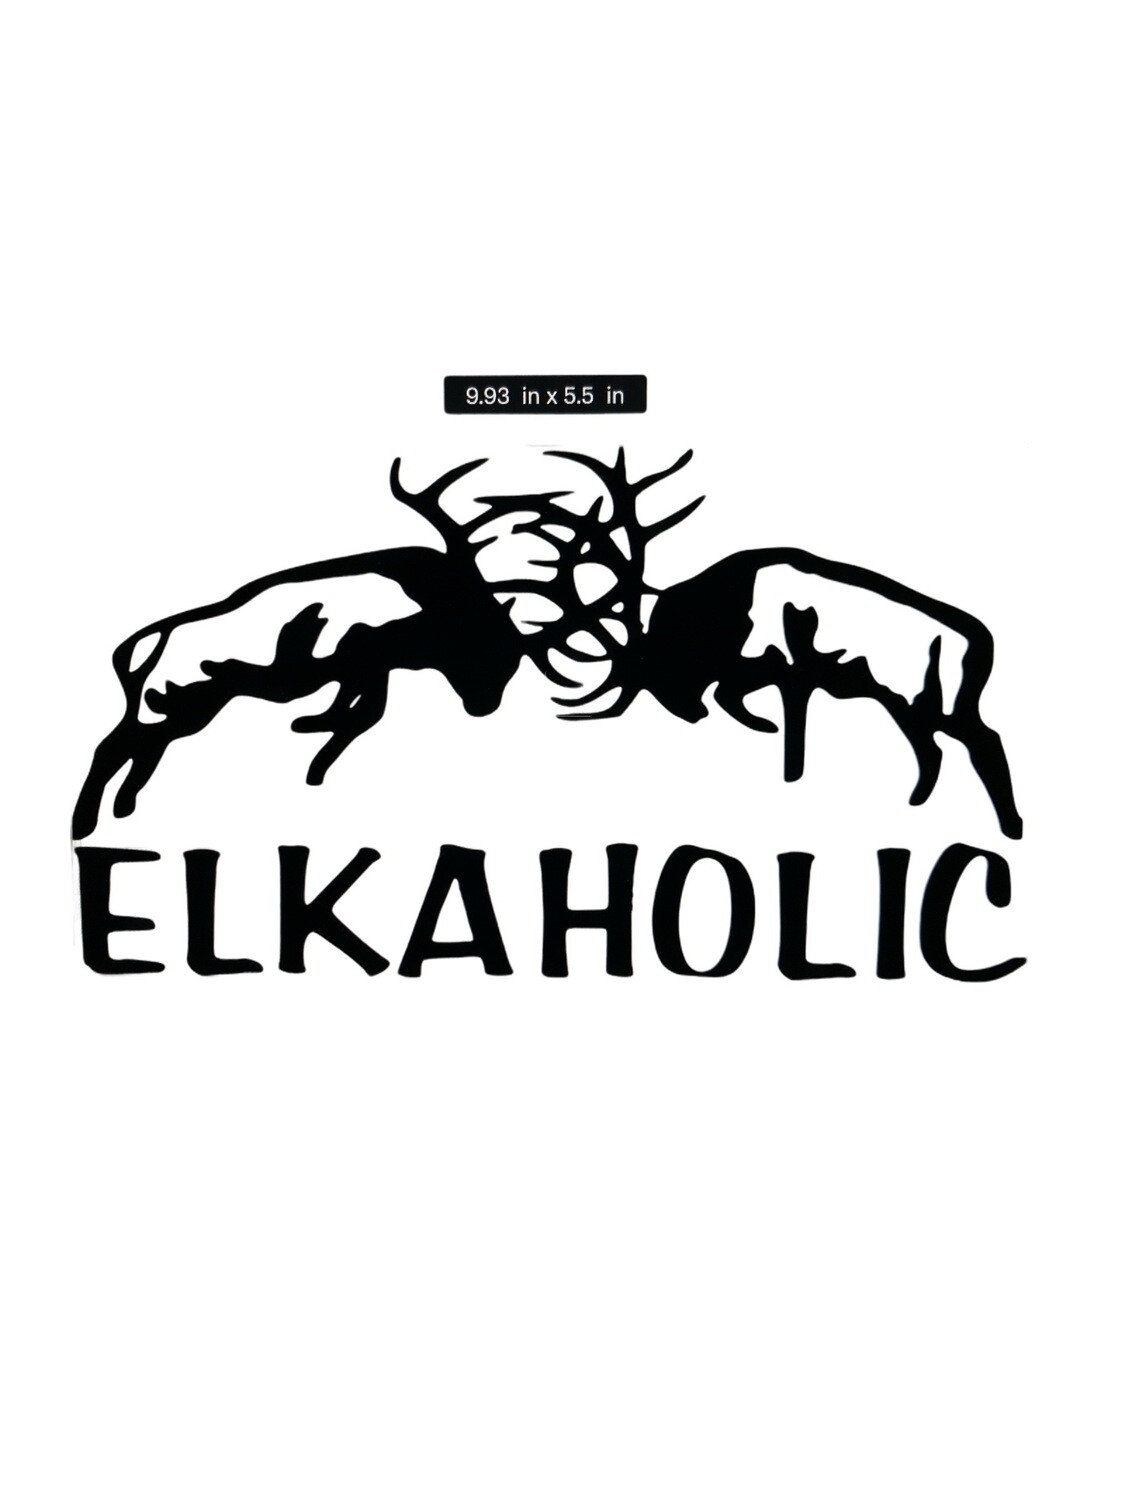 Elkaholic Decal 